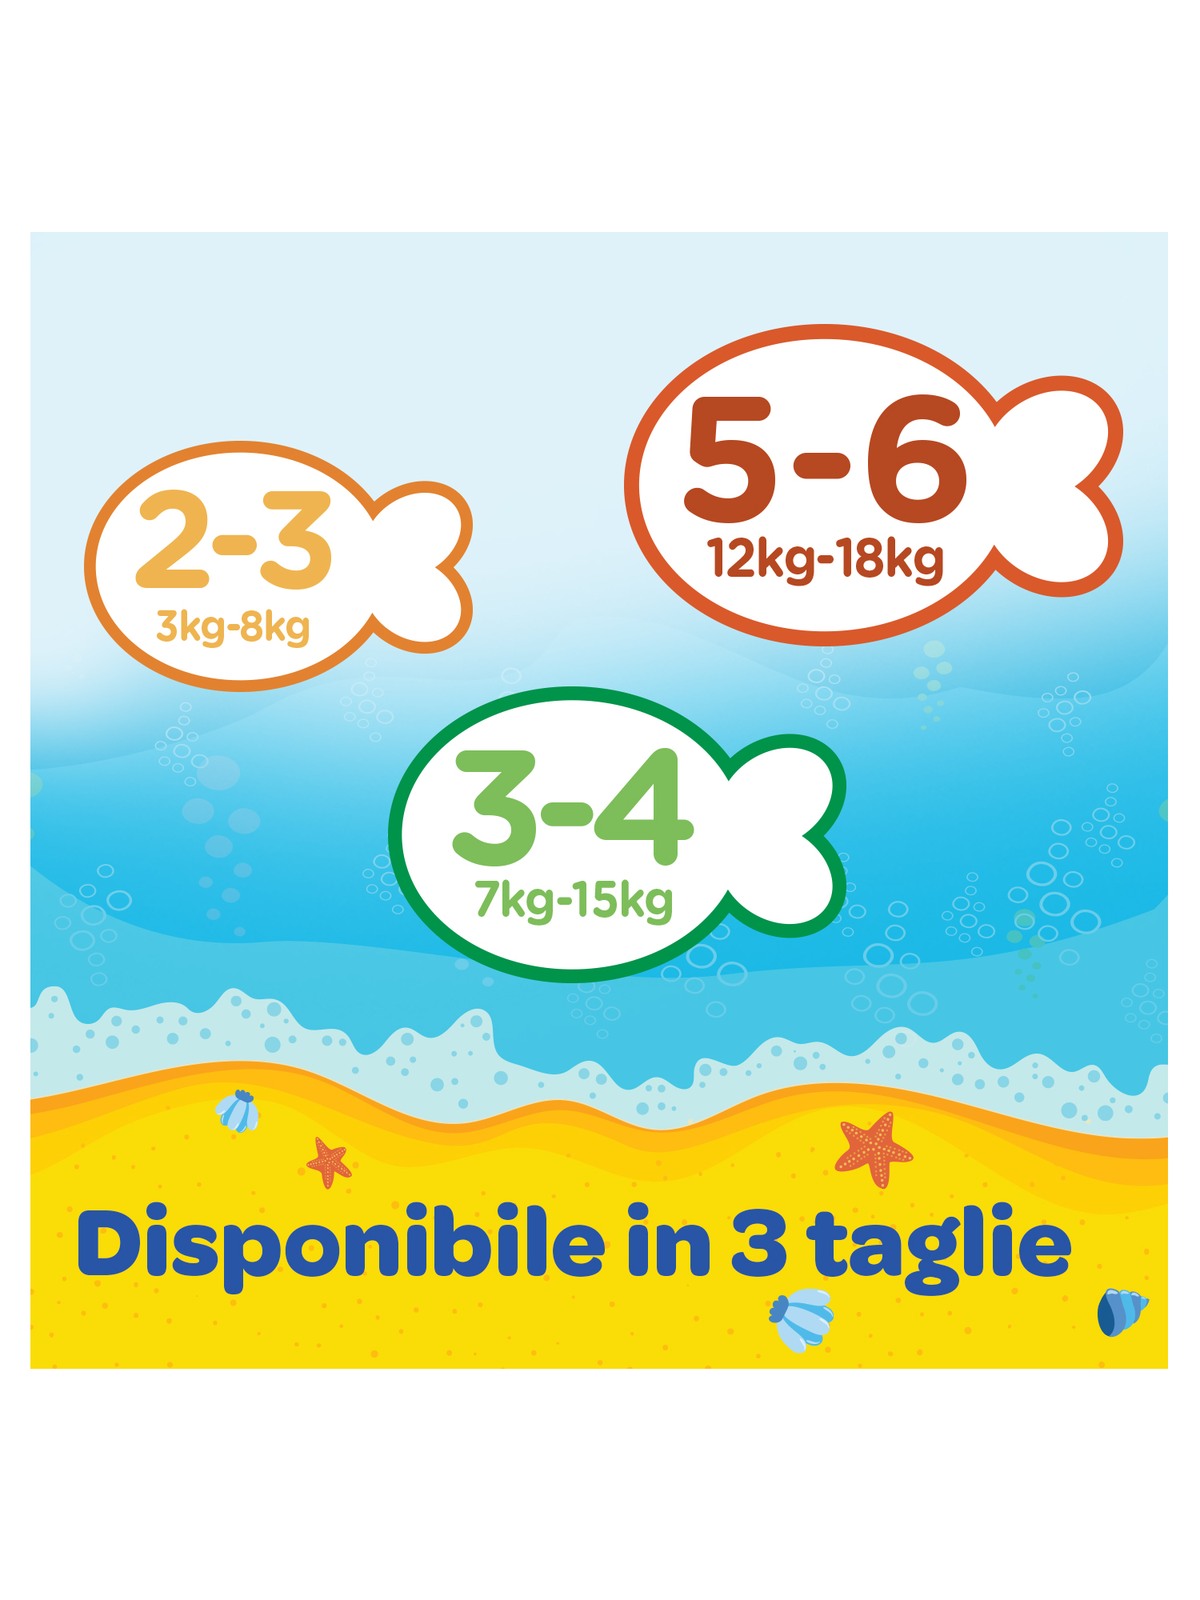 Huggies little swimmers taglia 2-3 (3-8 kg) - 20 pz - Huggies